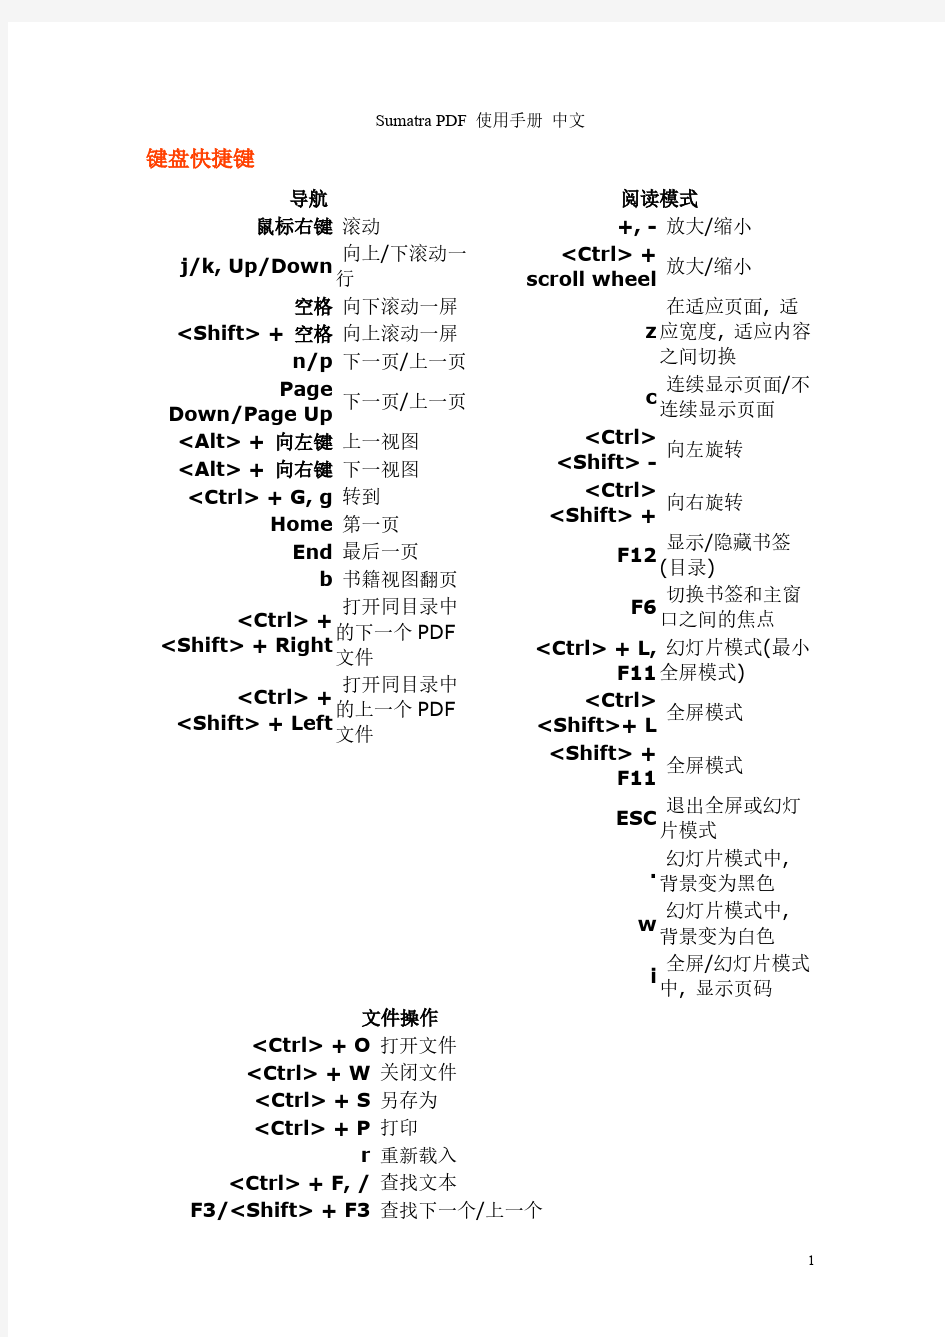 【免费下载】Sumatra PDF 使用手册 中文